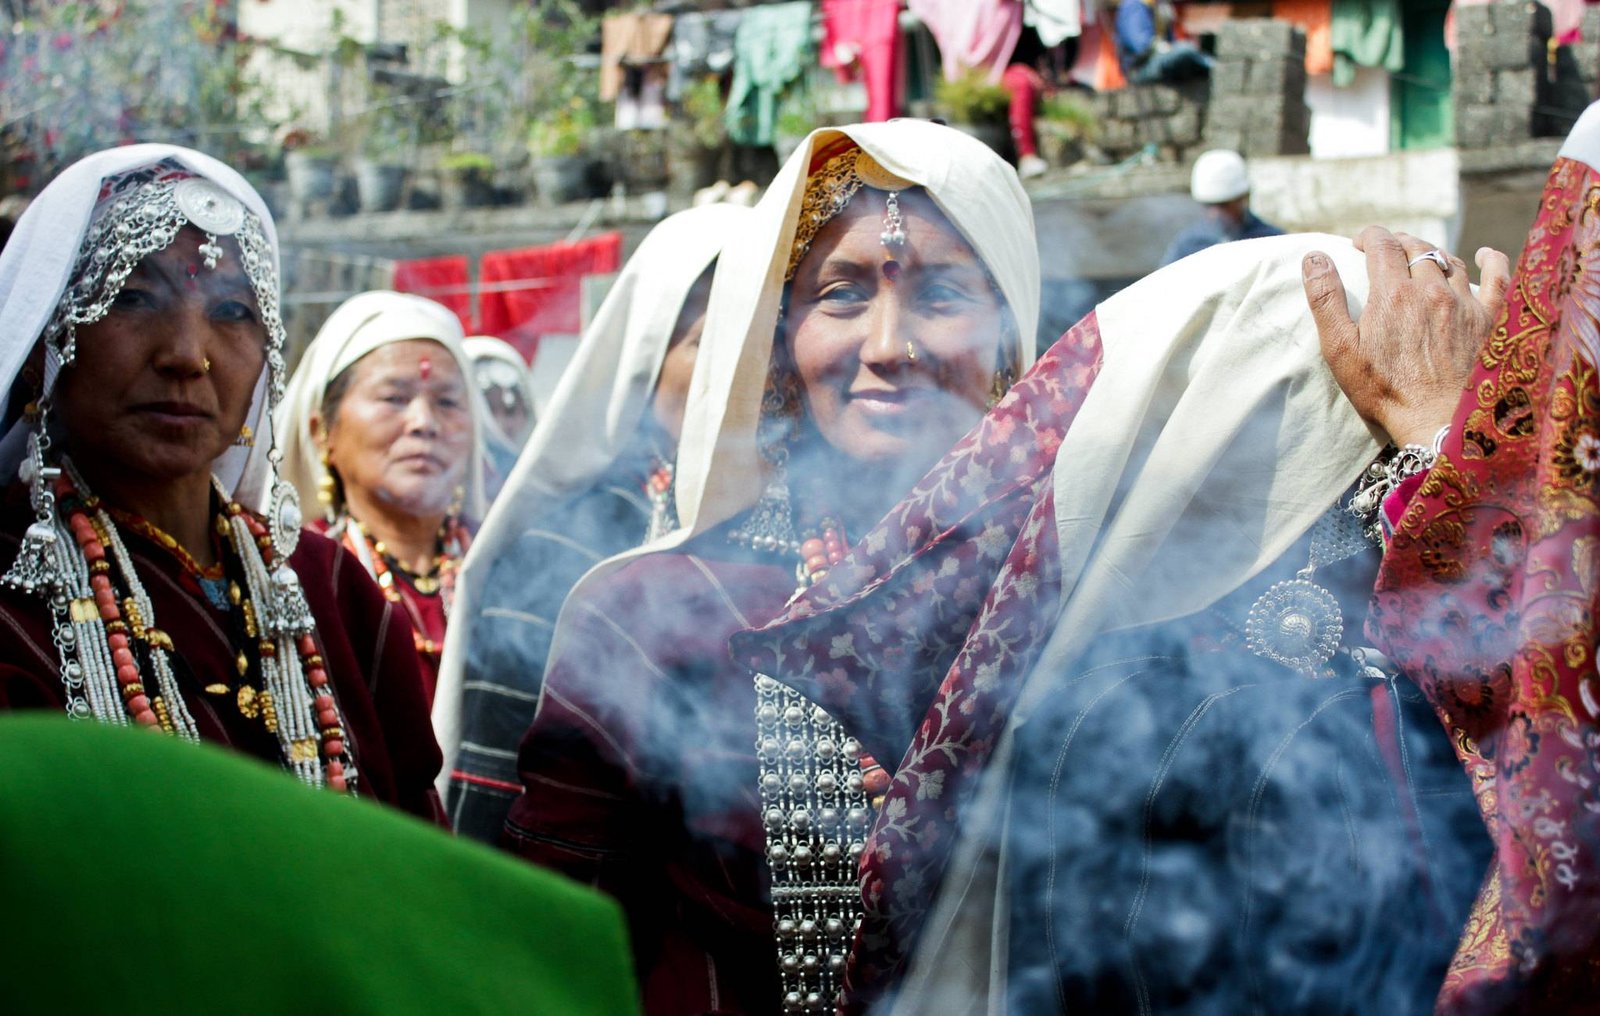 Uttarakhand traditional dress of women